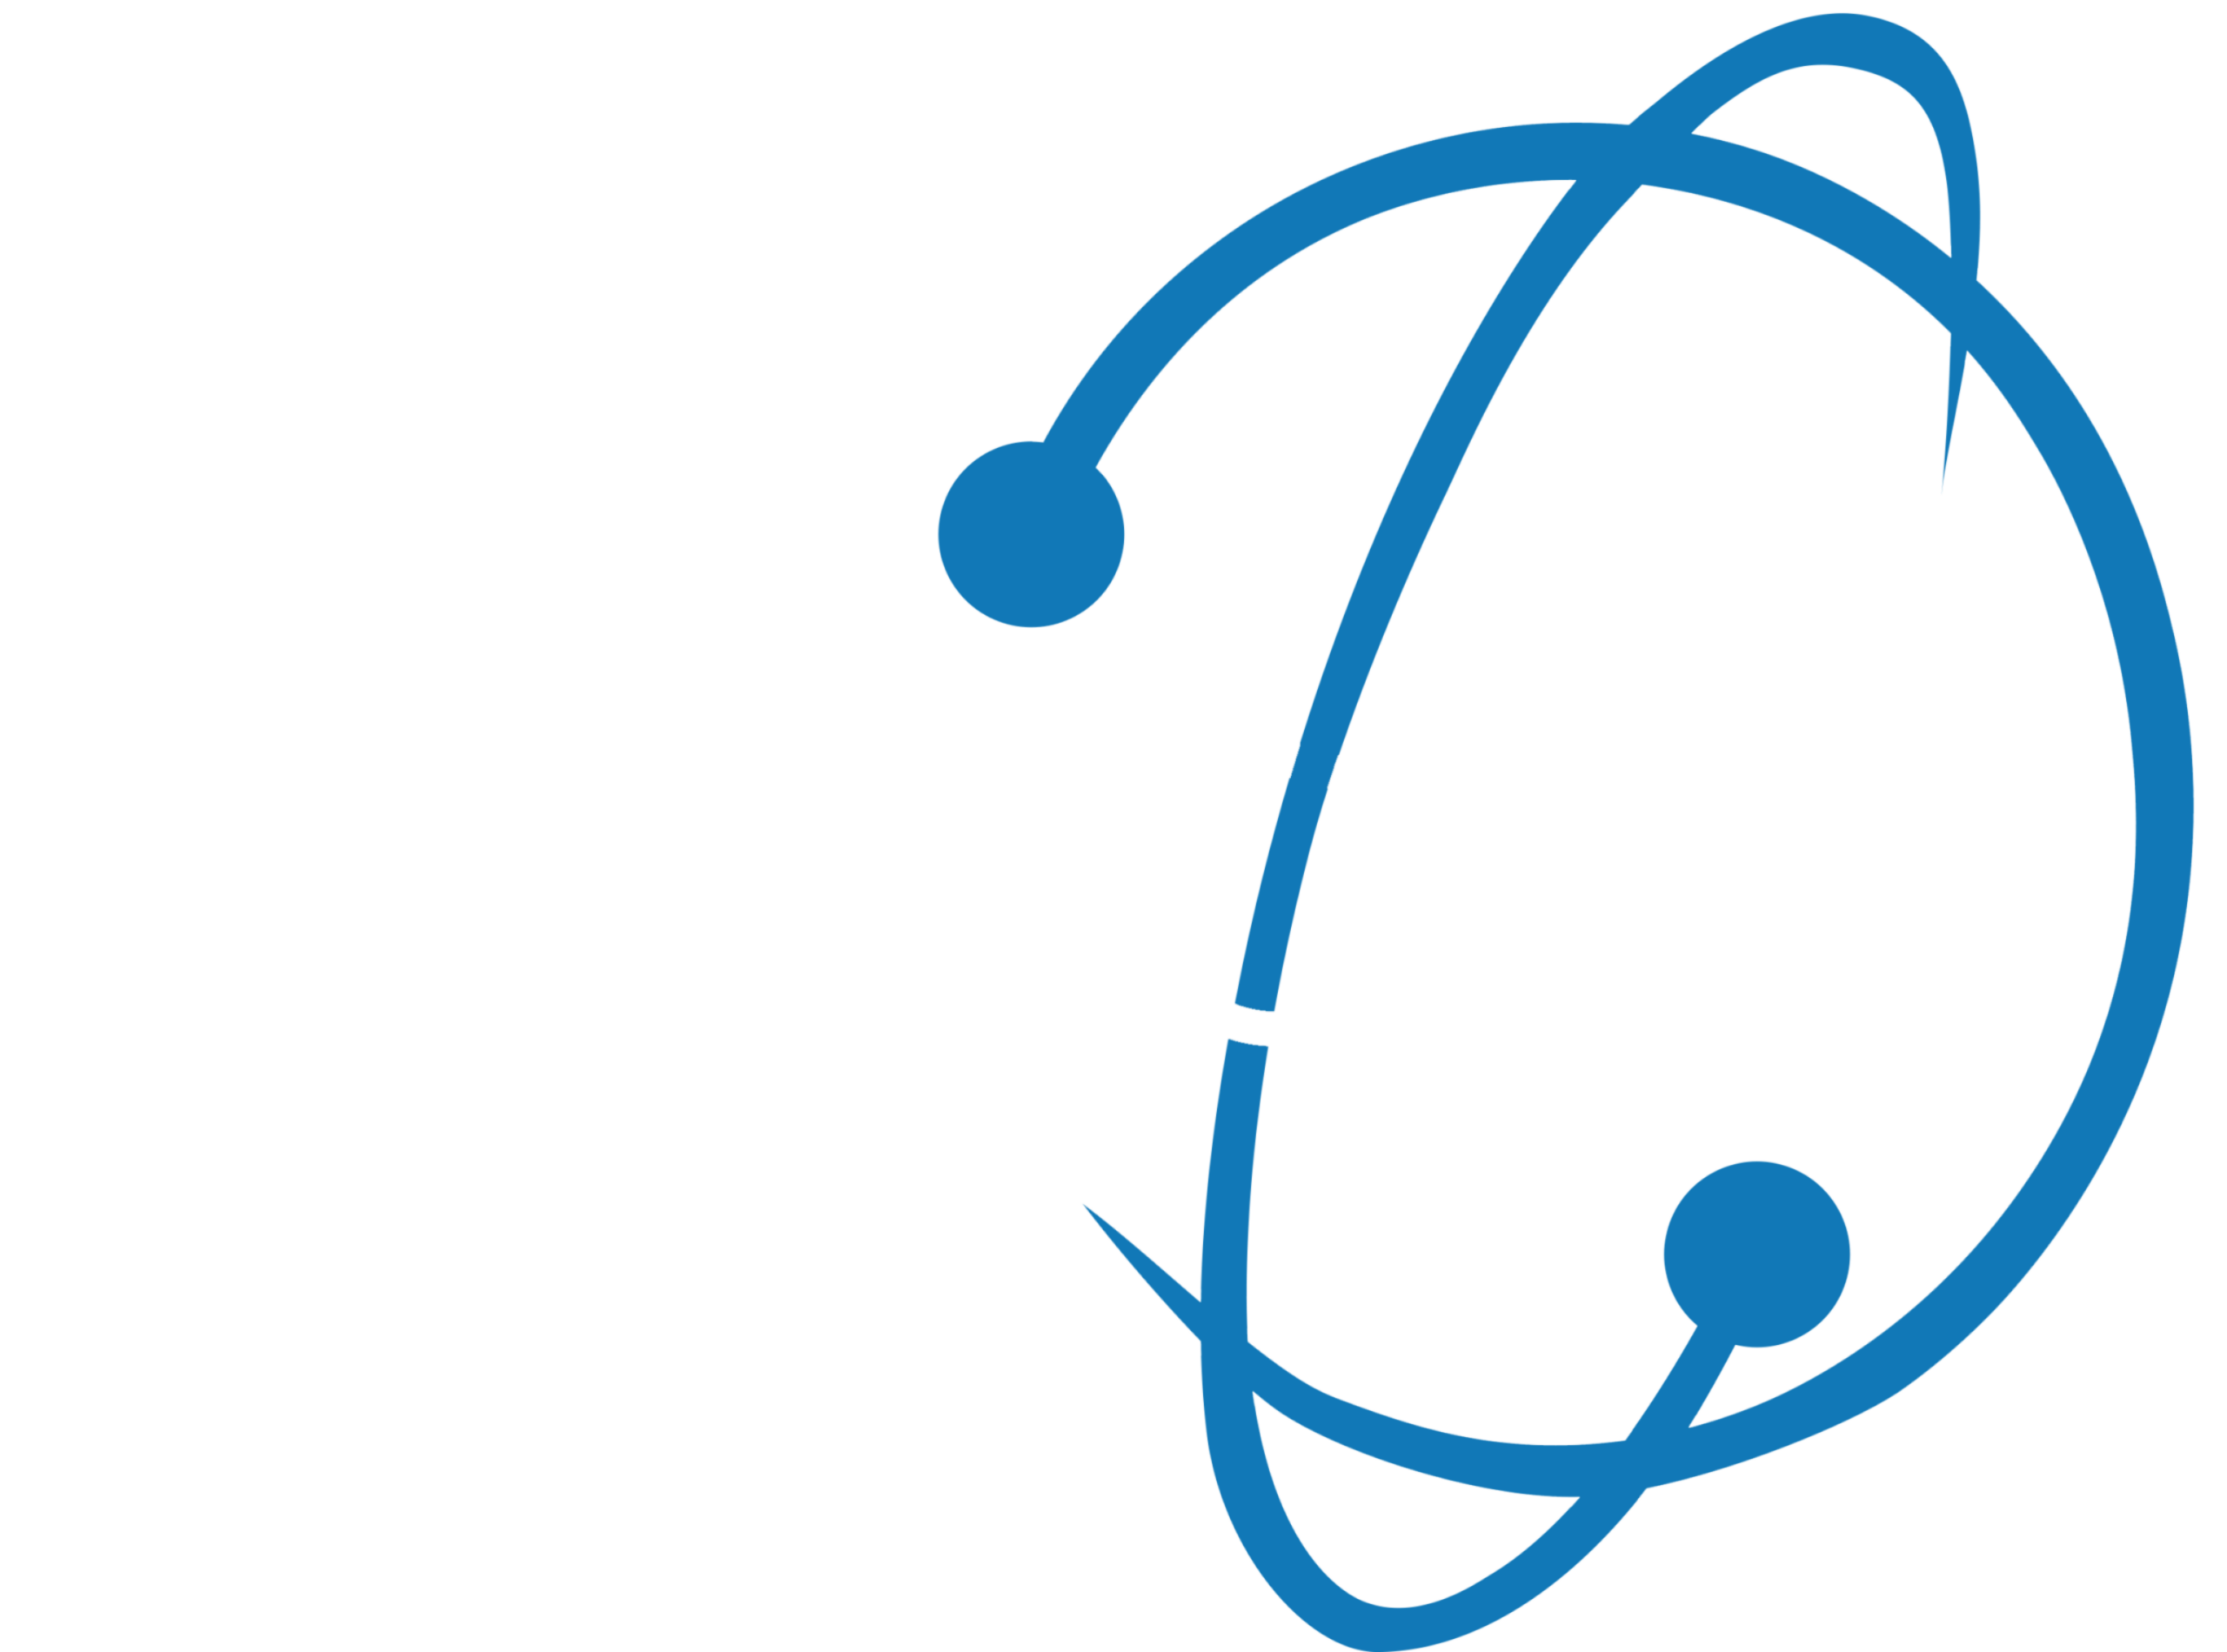 Nellow logo